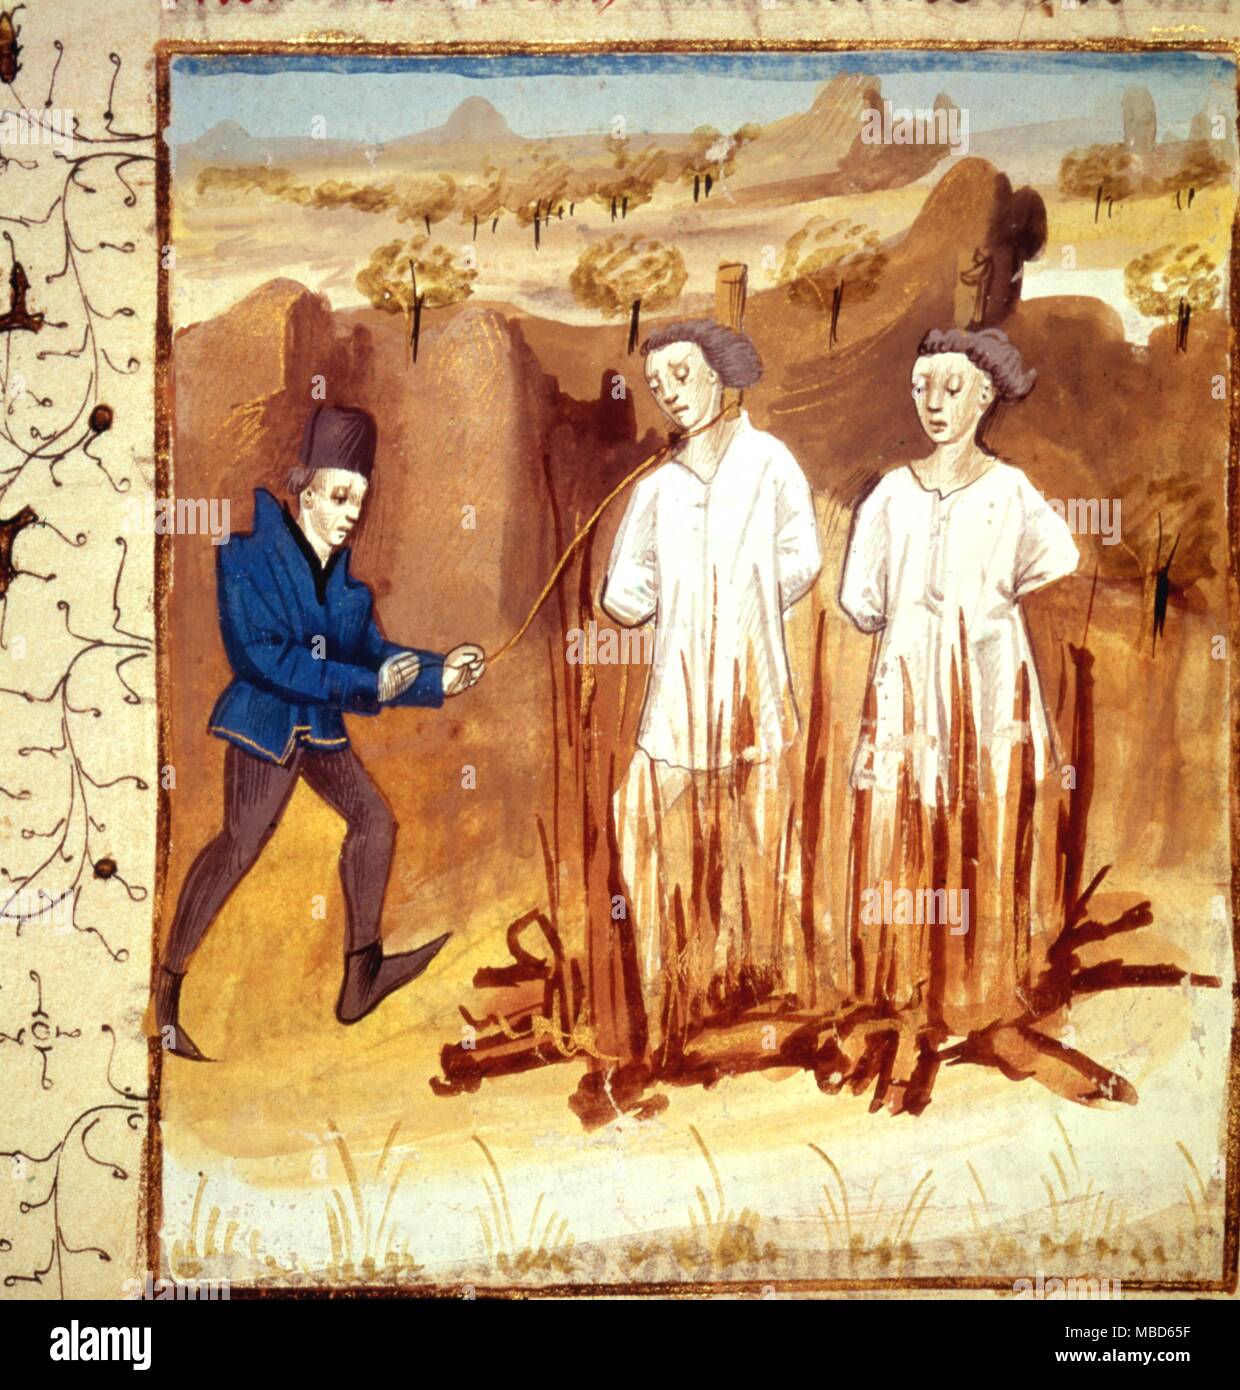 La combustion des Templiers au début du 14e siècle. Des mss. de la bibliothèque de l'Arsenal, Paris Banque D'Images